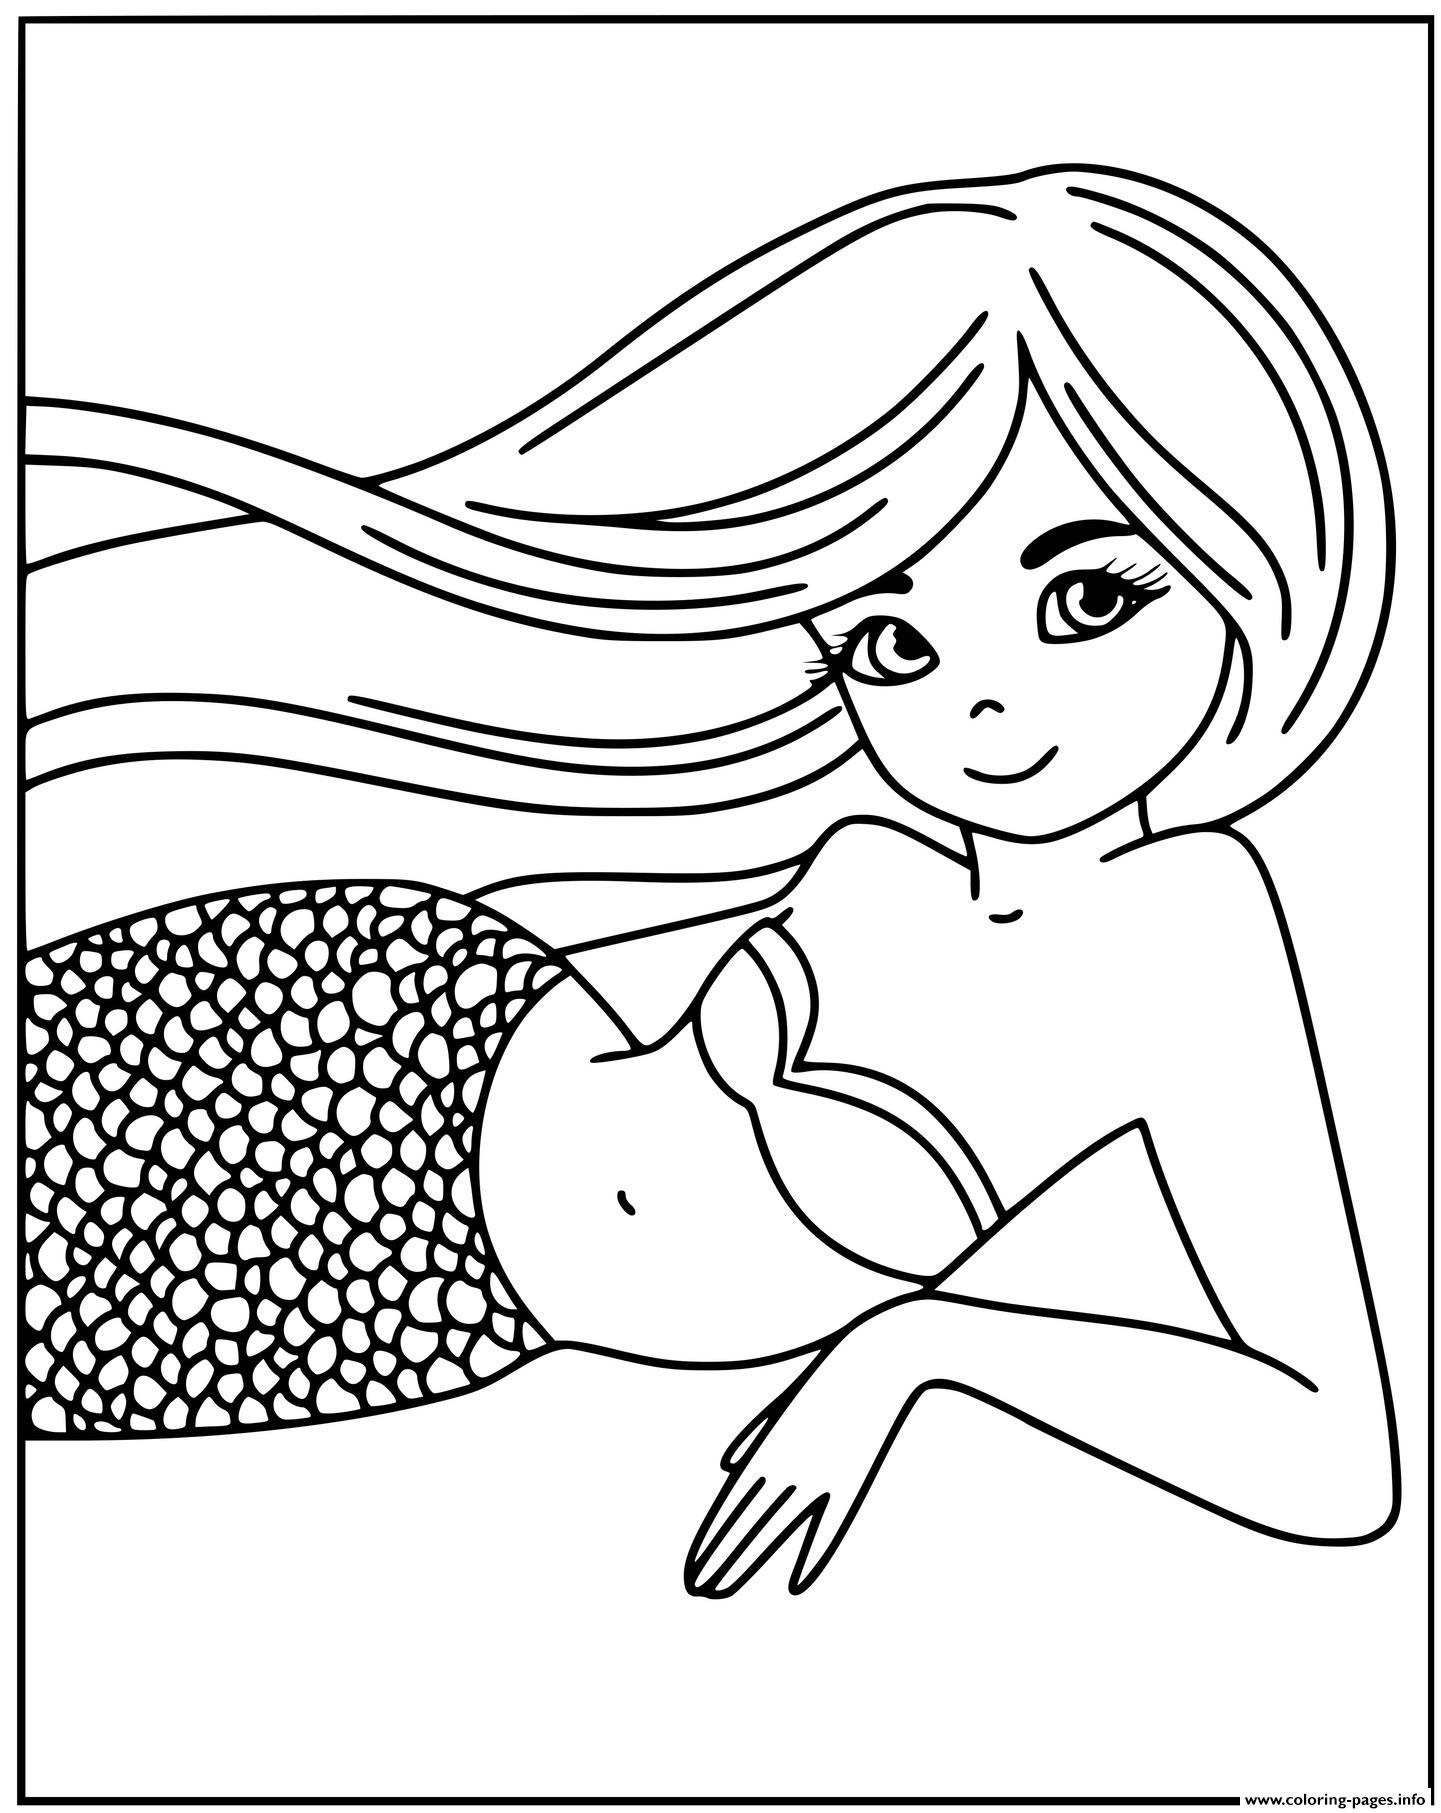 Kind Mermaid Smiling Barbie Coloring Pages Printable